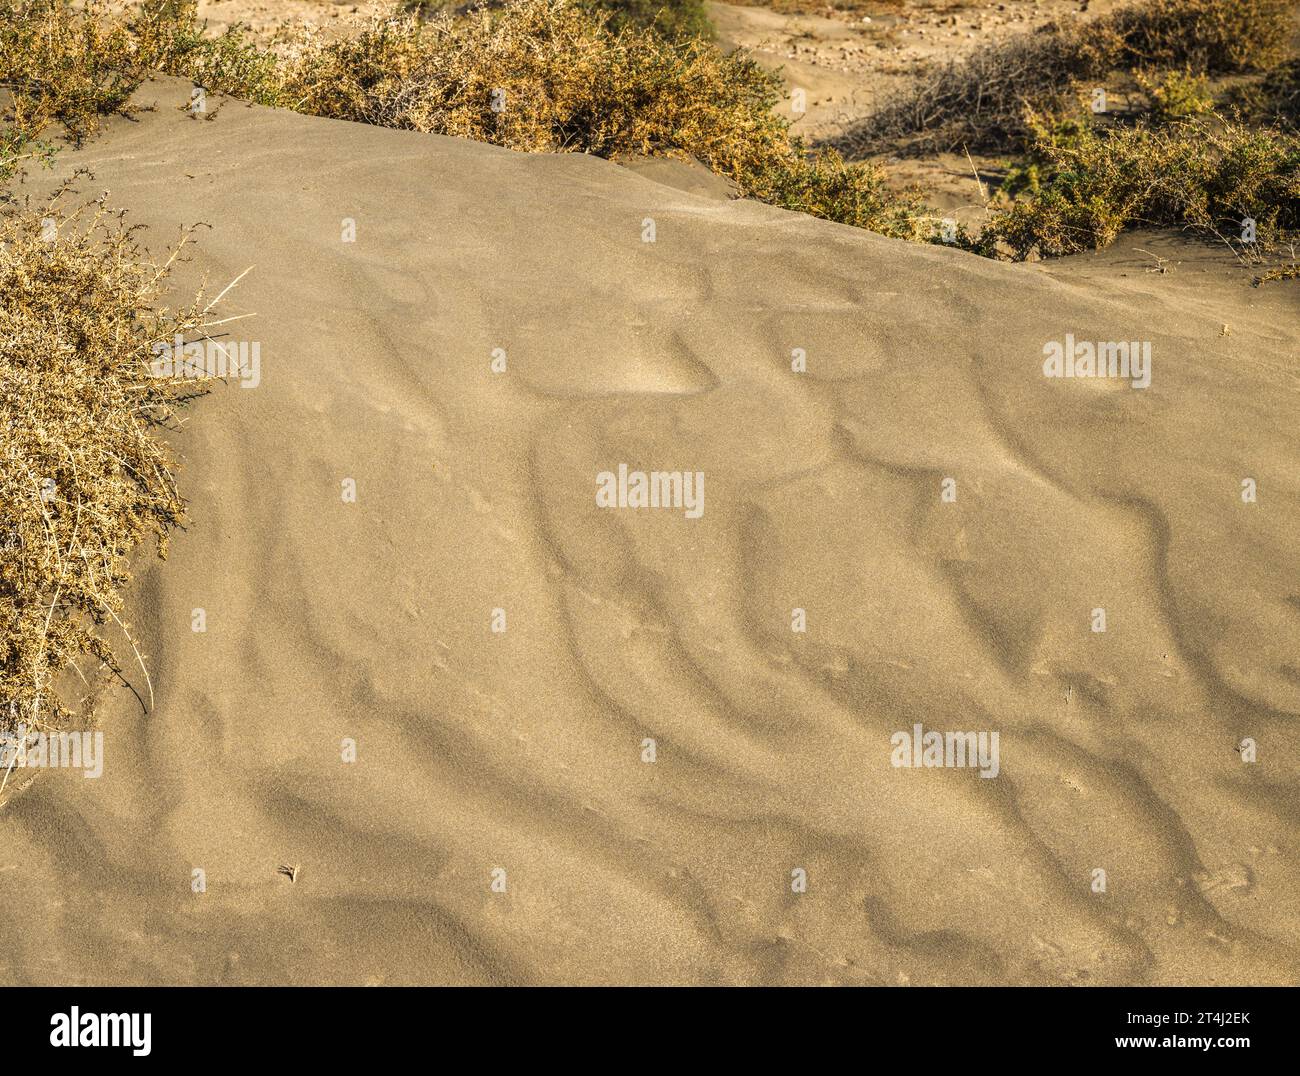 Kleine Kalksandüne mit äolischen (windproduzierten) Wellen, teilweise von Vegetation besiedelt, Montana Roja, El Medano, Teneriffa, Kanarische Inseln Stockfoto